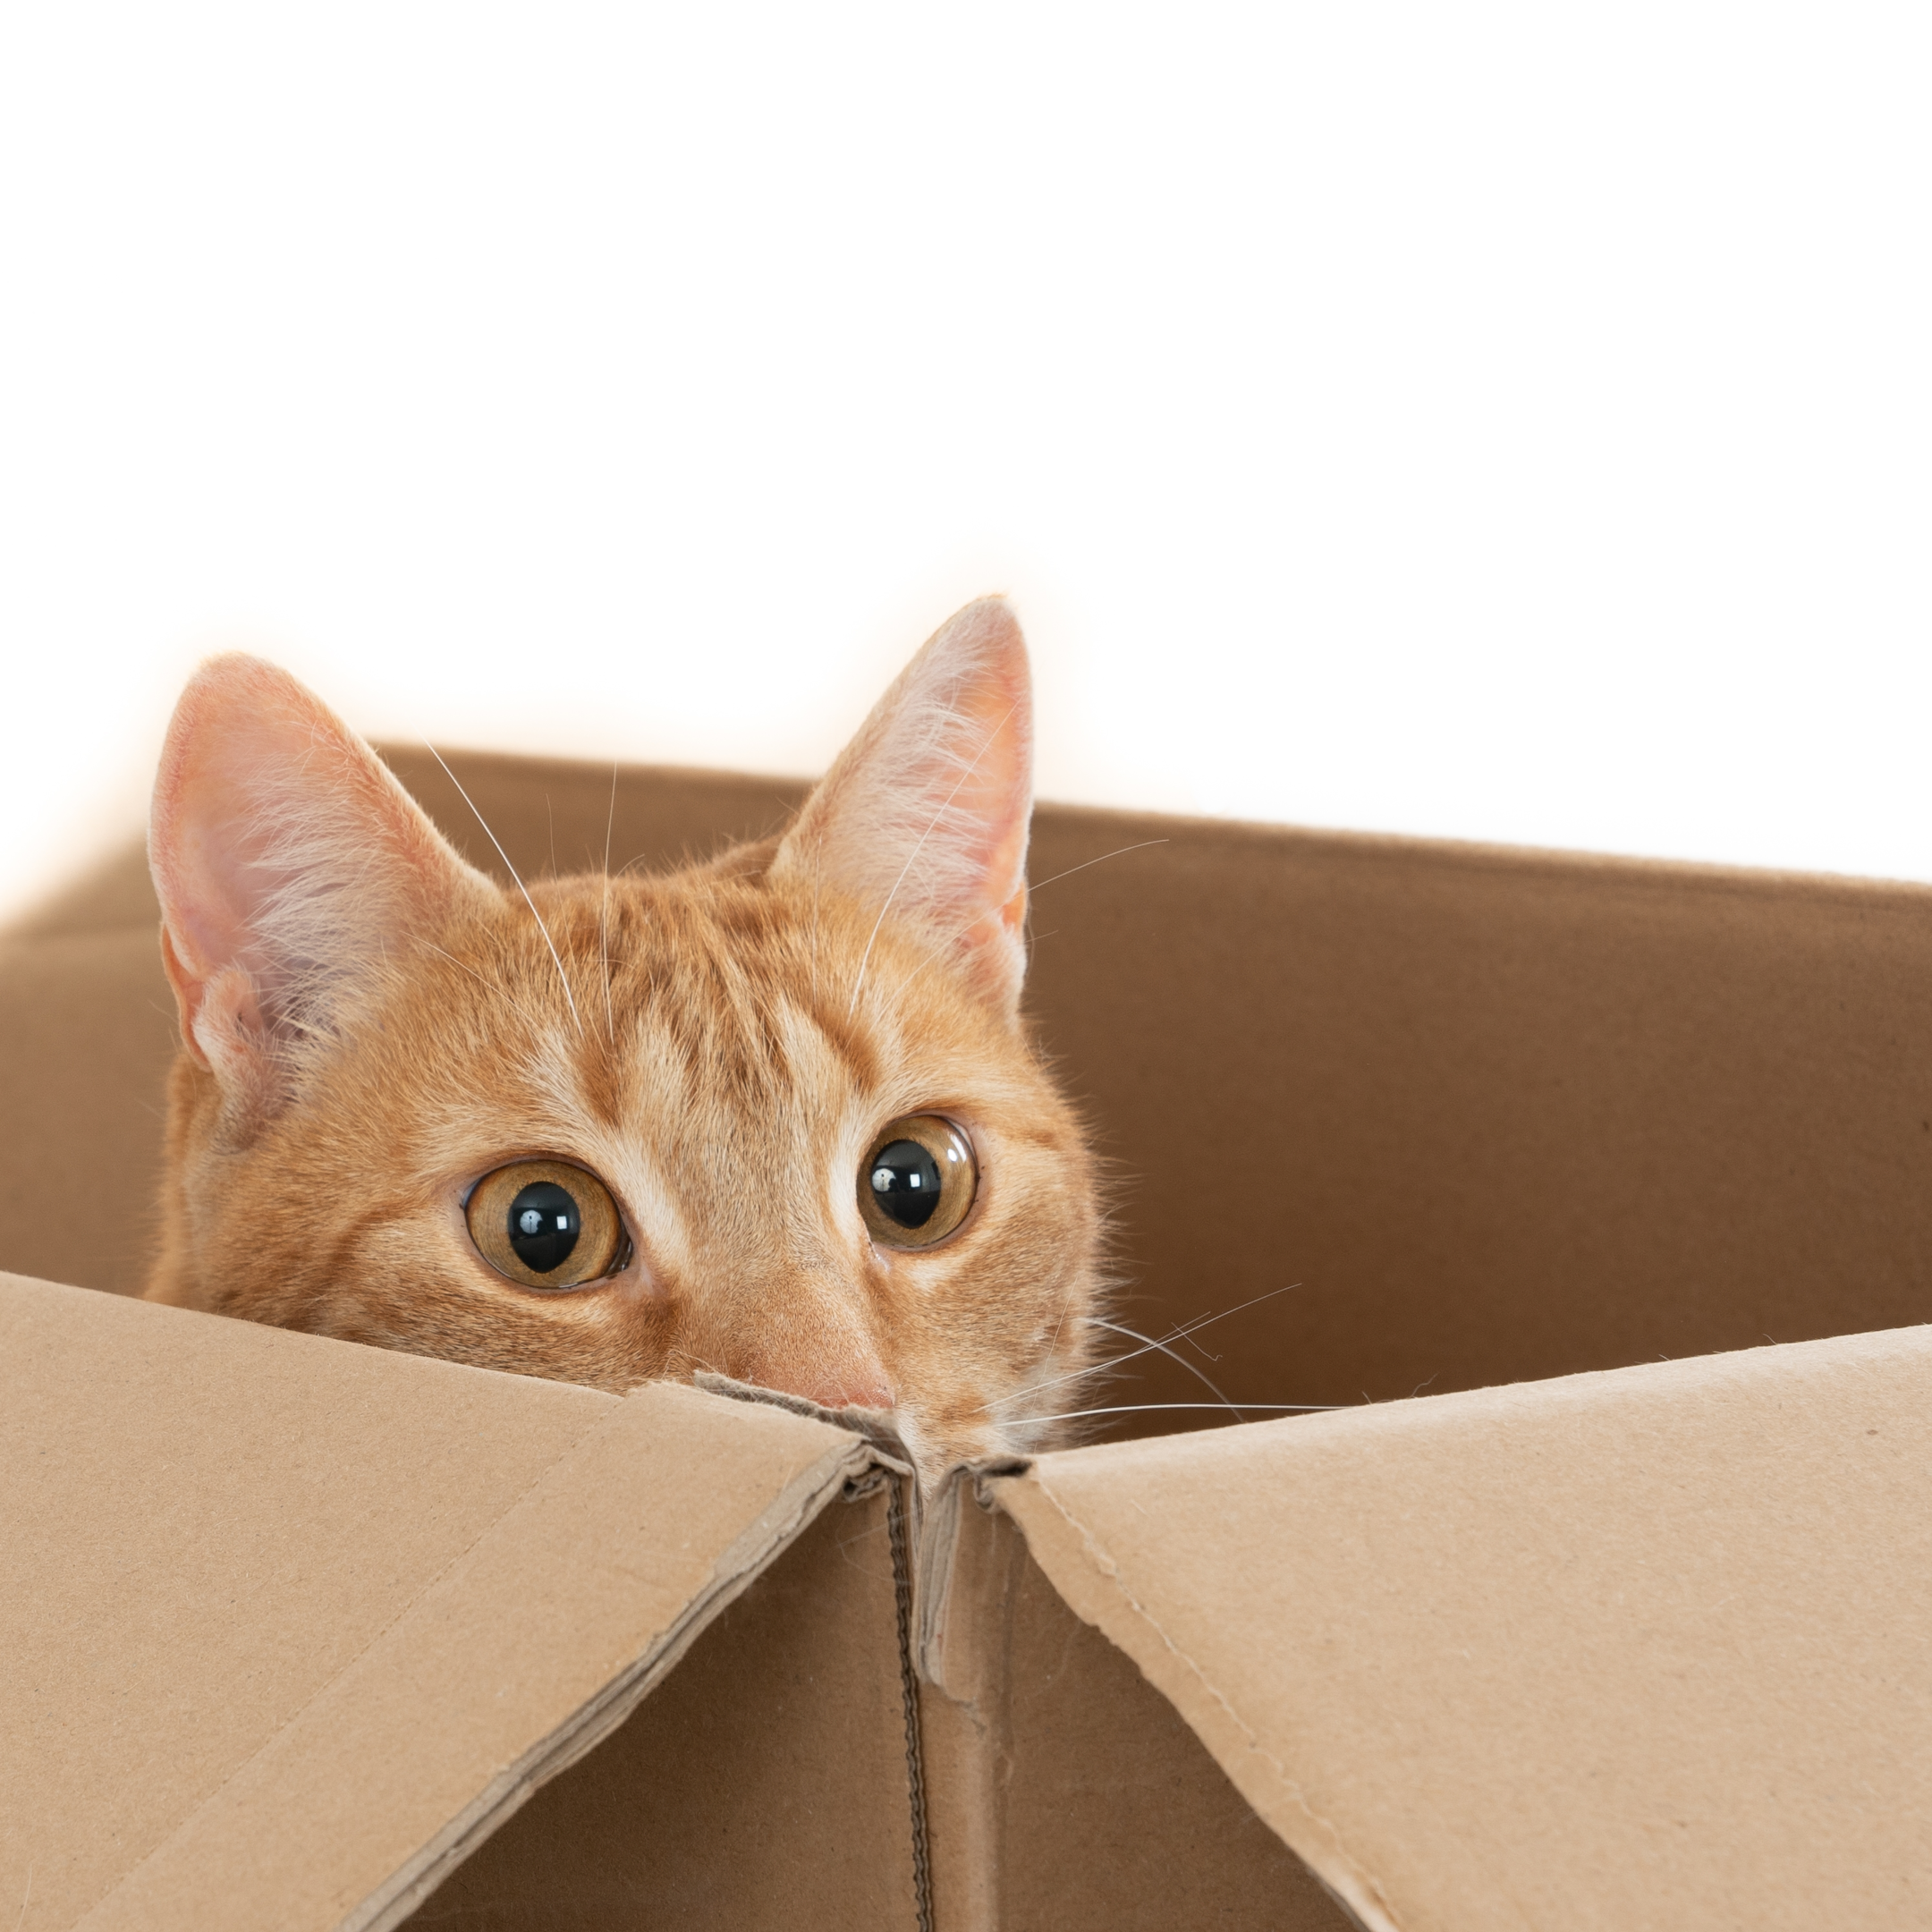 Eine Katze versteckt sich in einem Karton und beobachtet das Geschehen.